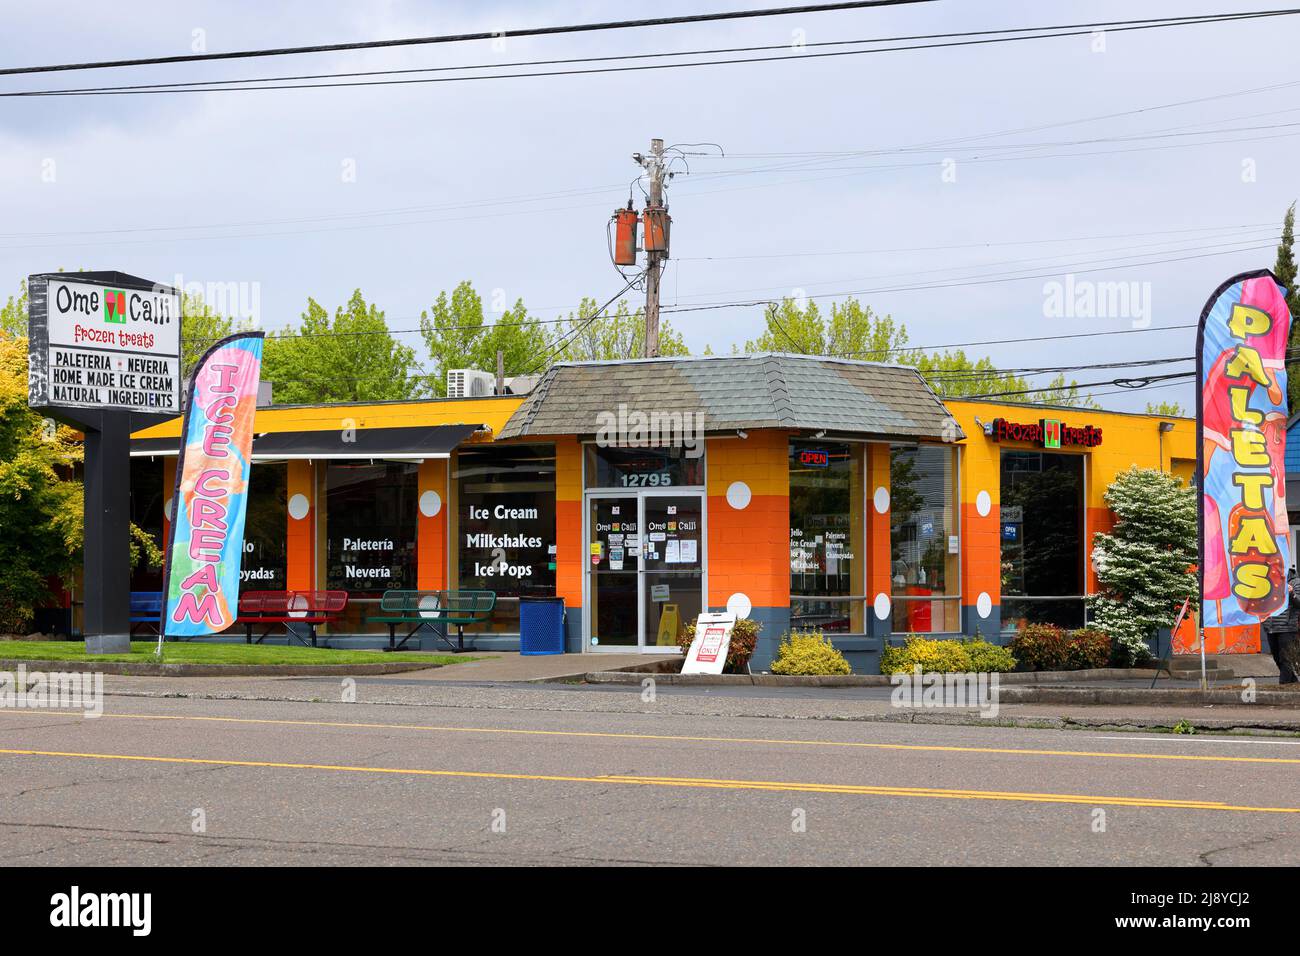 OME Calli, 12795 SW Canyon Rd, Beaverton-Schaufensterfoto eines mexikanischen Eises und eines Popsicle-Shops. OME Calli paleteria y neveria, Oregon Stockfoto